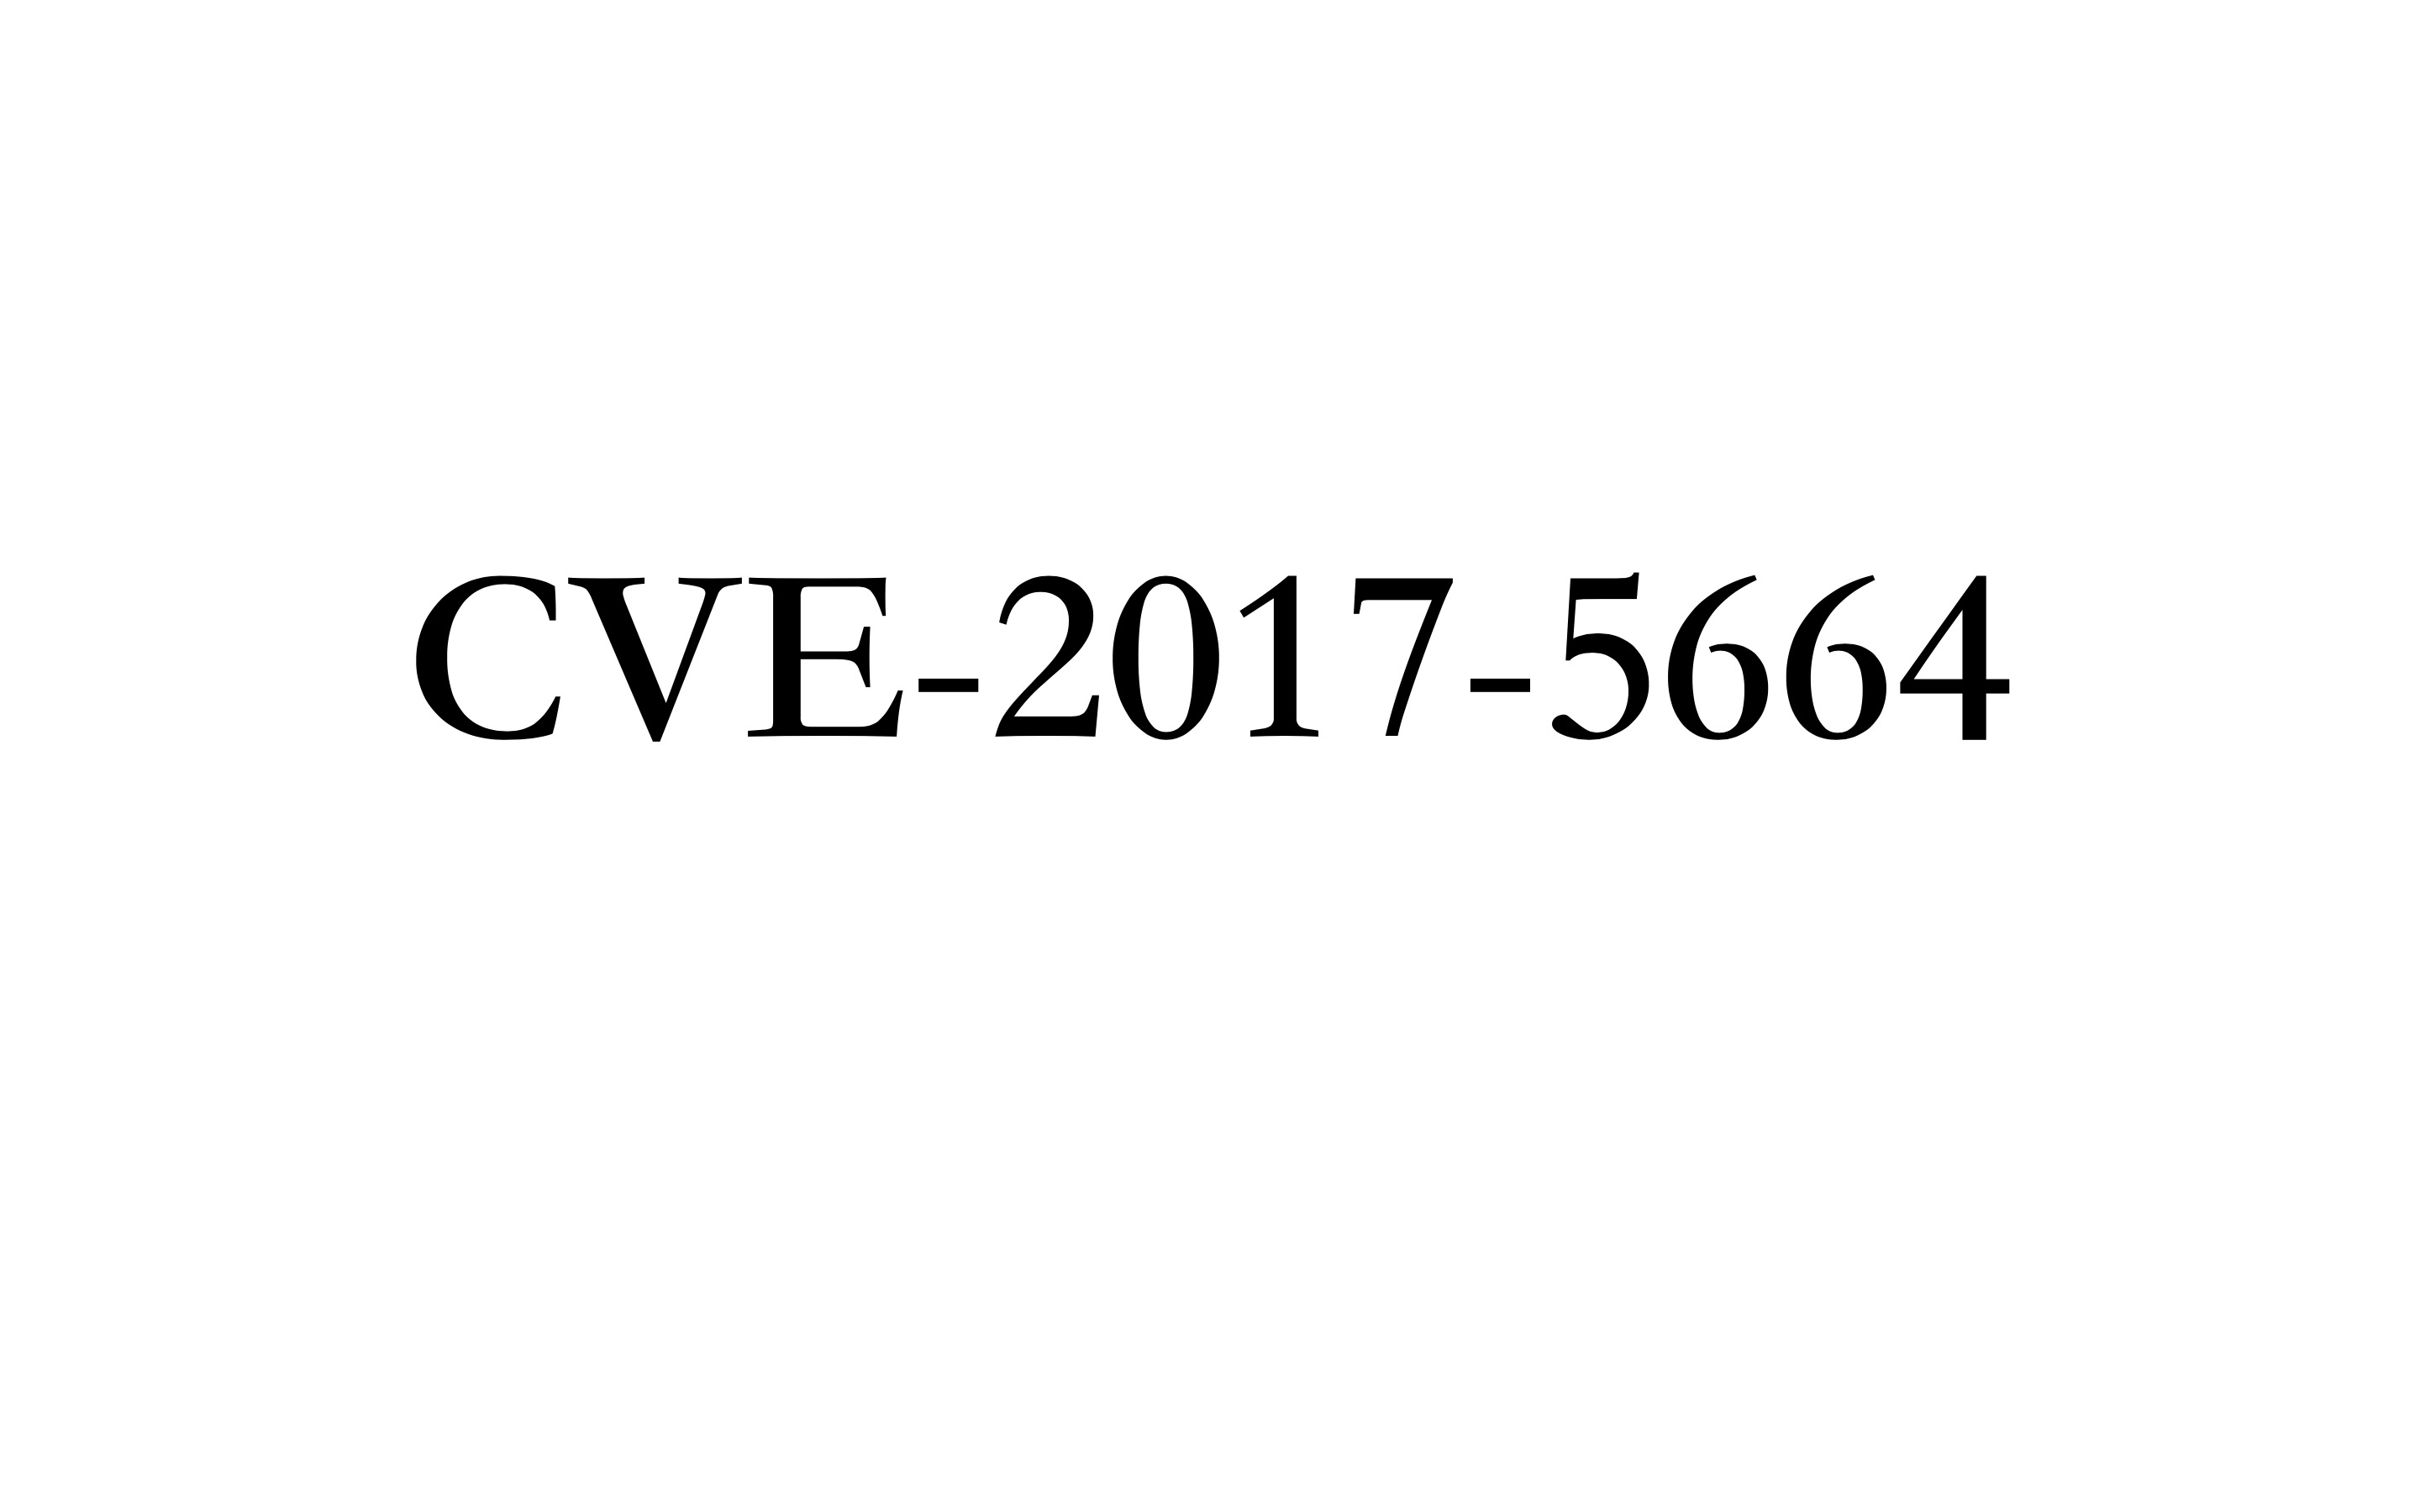 CVE-2017-5664